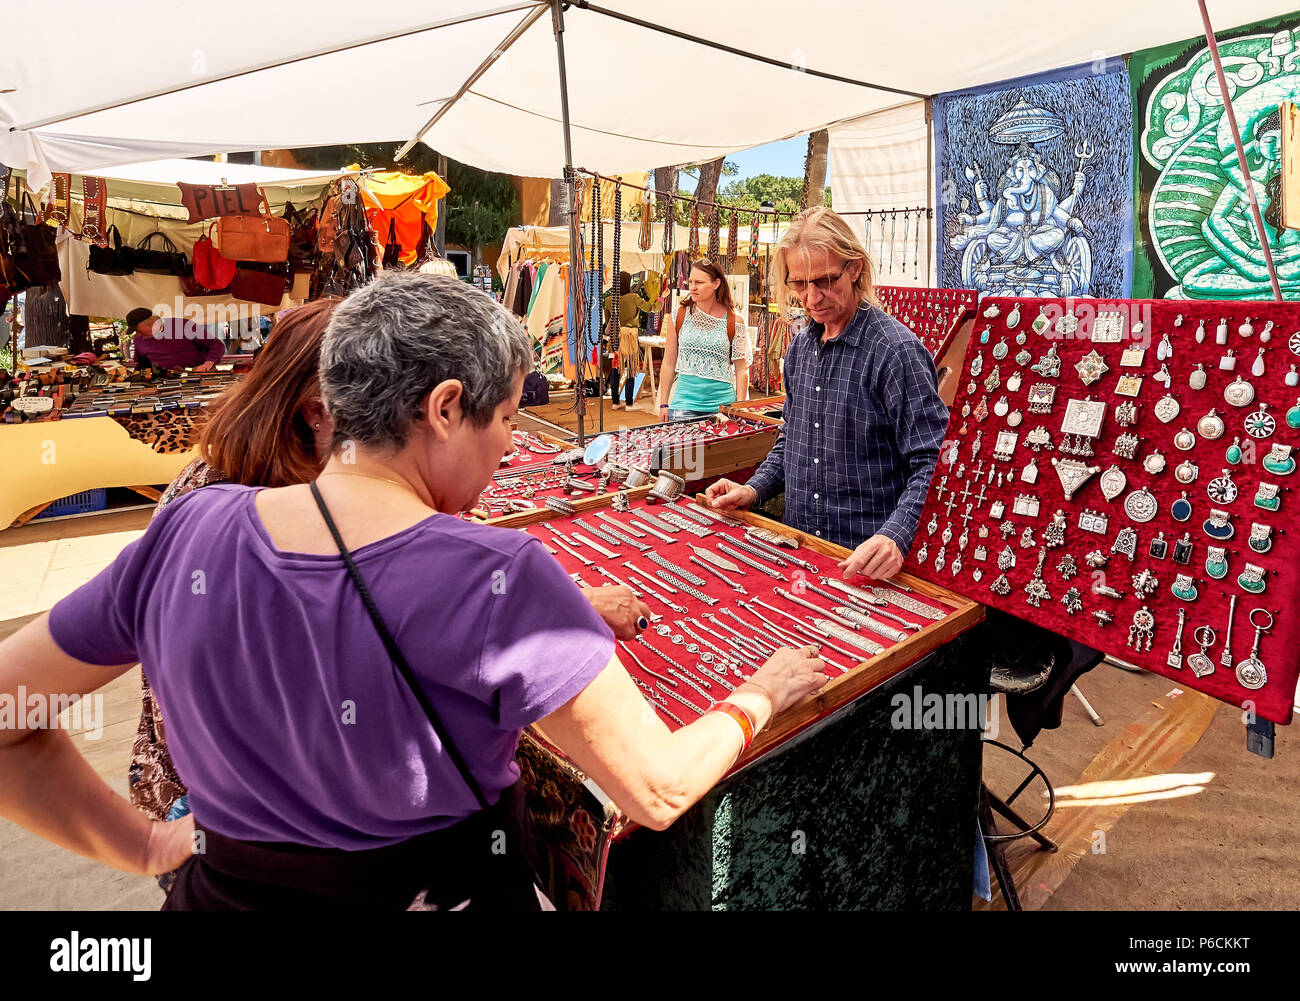 Isola di Ibiza, Spagna - 2 Maggio 2018: venditore e acquirenti al mercato hippy di Isola di Ibiza. In stallo la vendita di accessori moda e gioielli in argento con Foto Stock